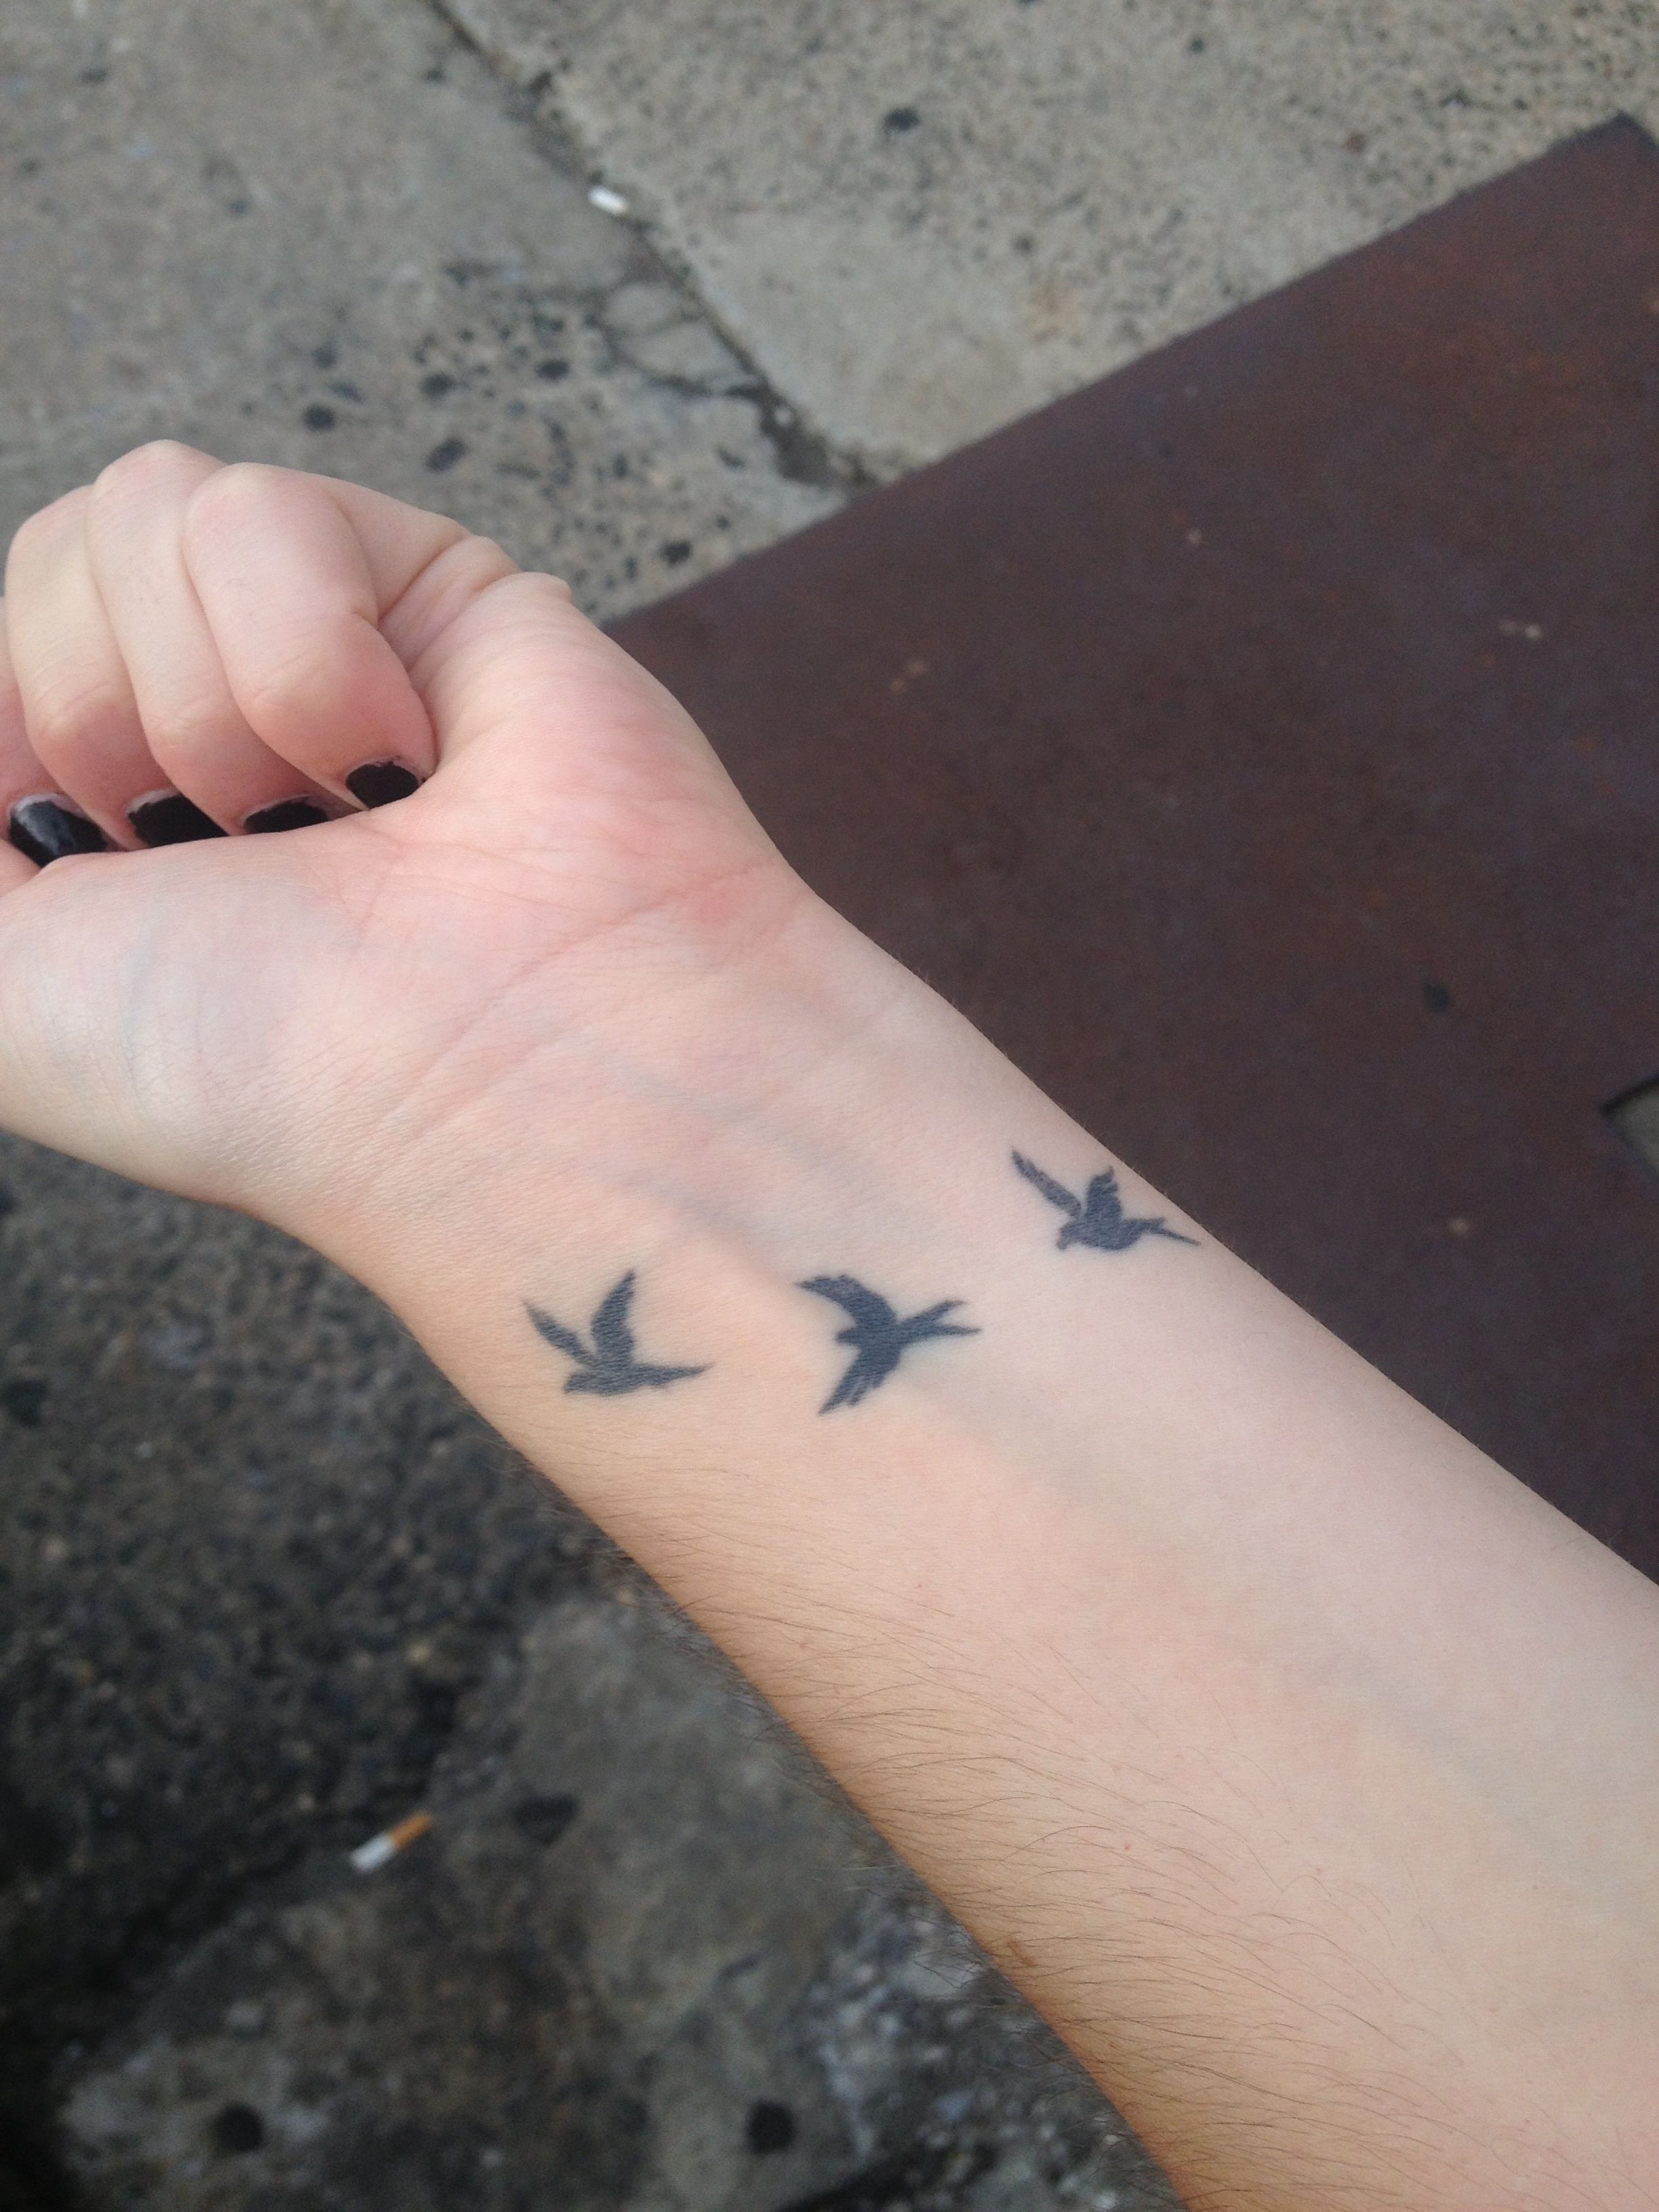 Keris Bird Wrist Tattoo Tattoos Wrist Tattoos Bird Tattoo Wrist in measurements 2448 X 3264